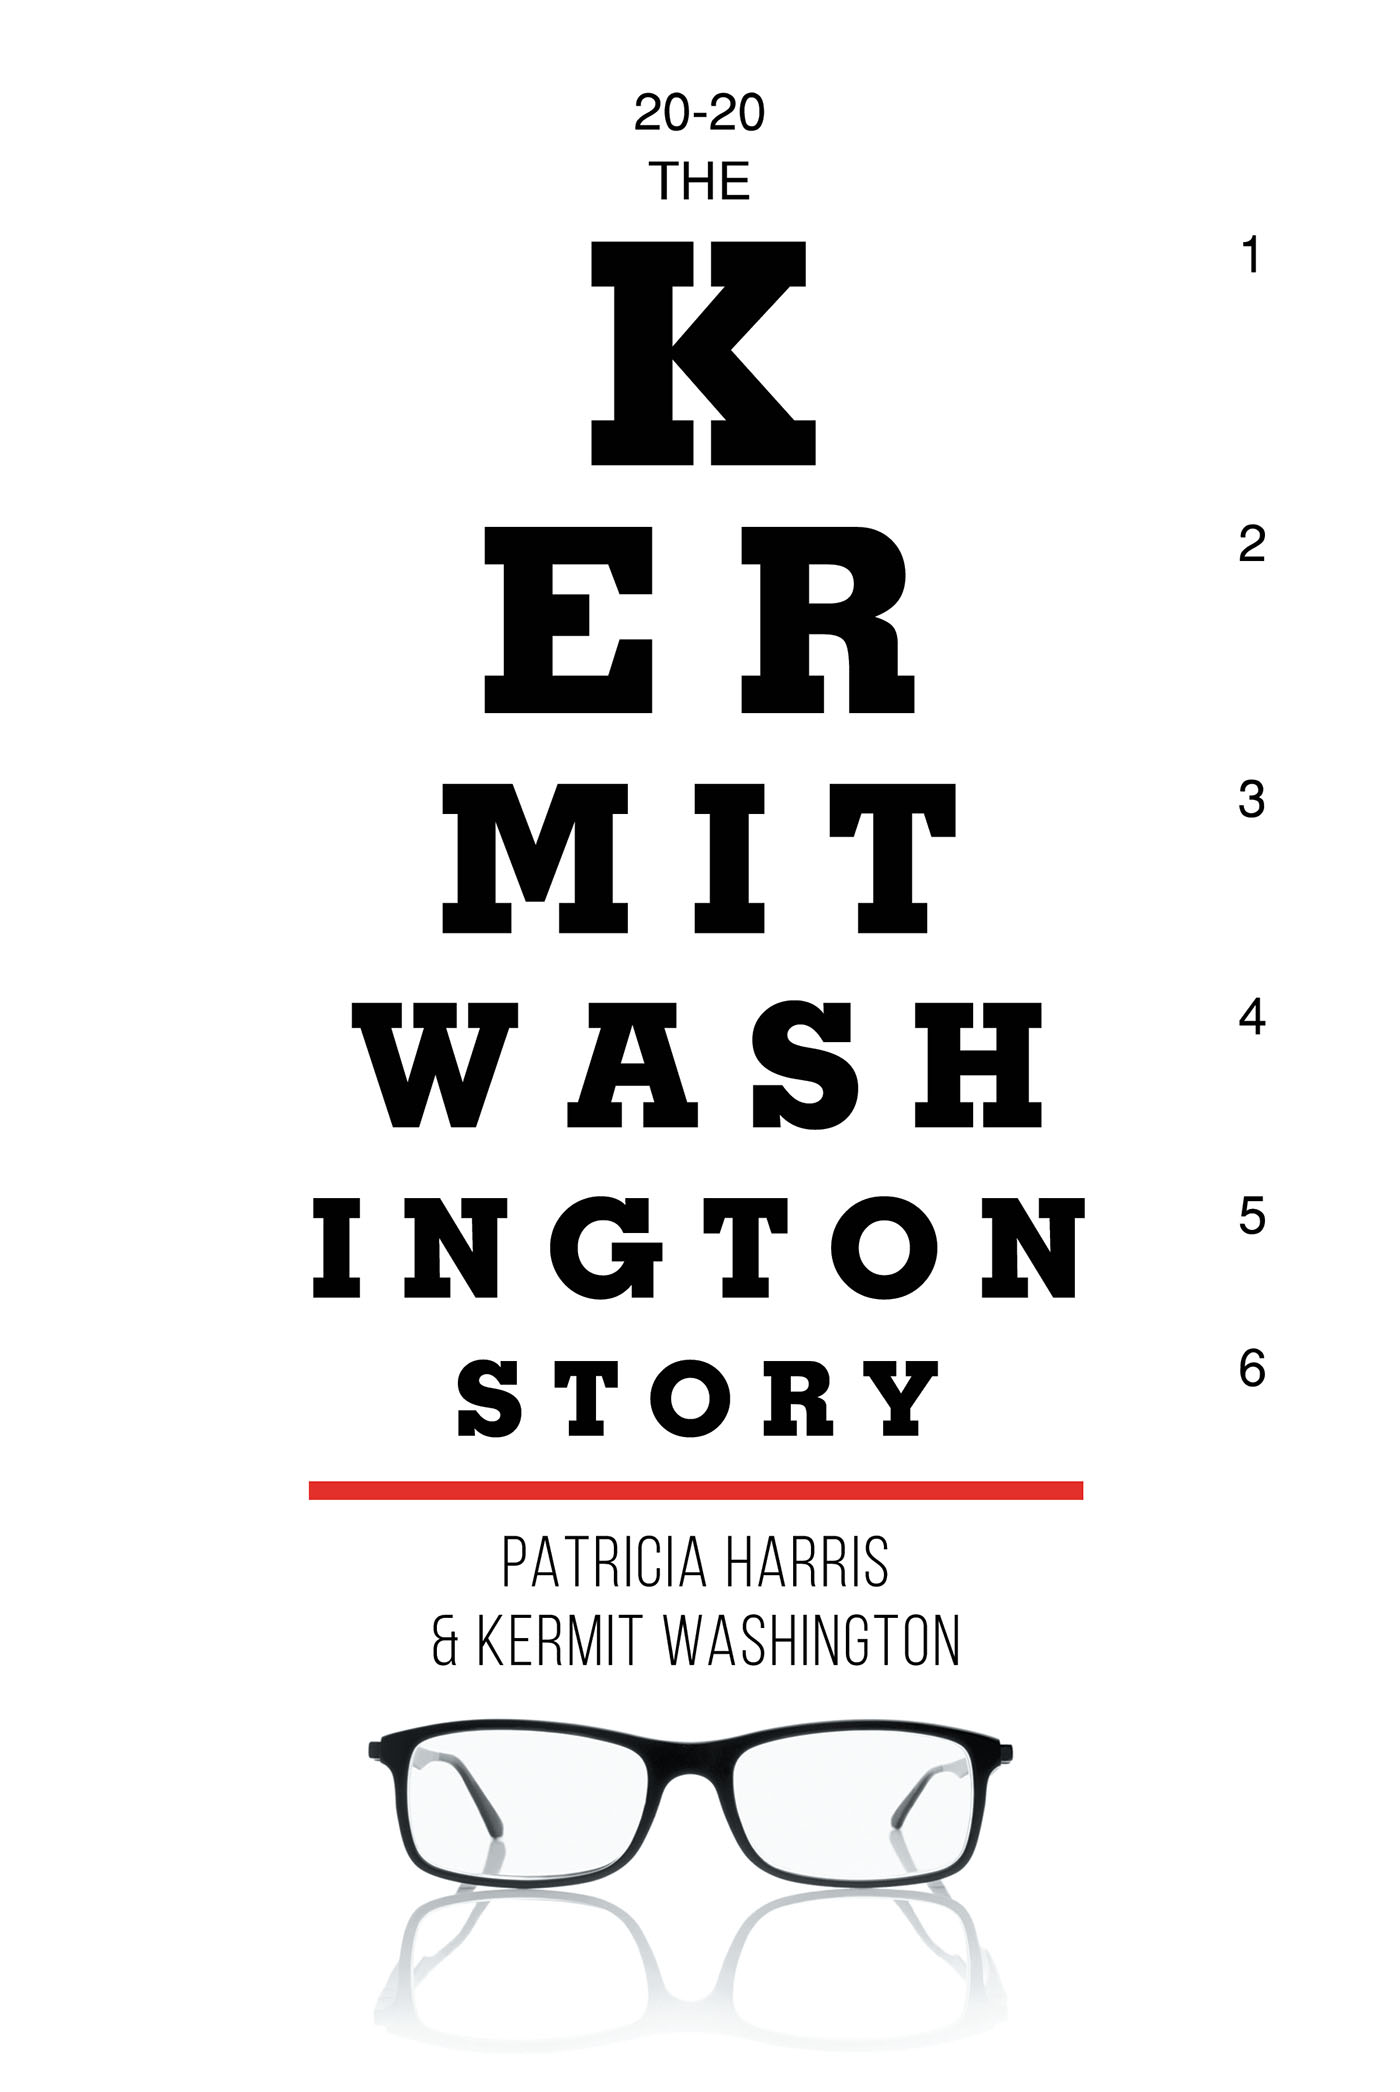 The Kermit Washington Story Cover Image